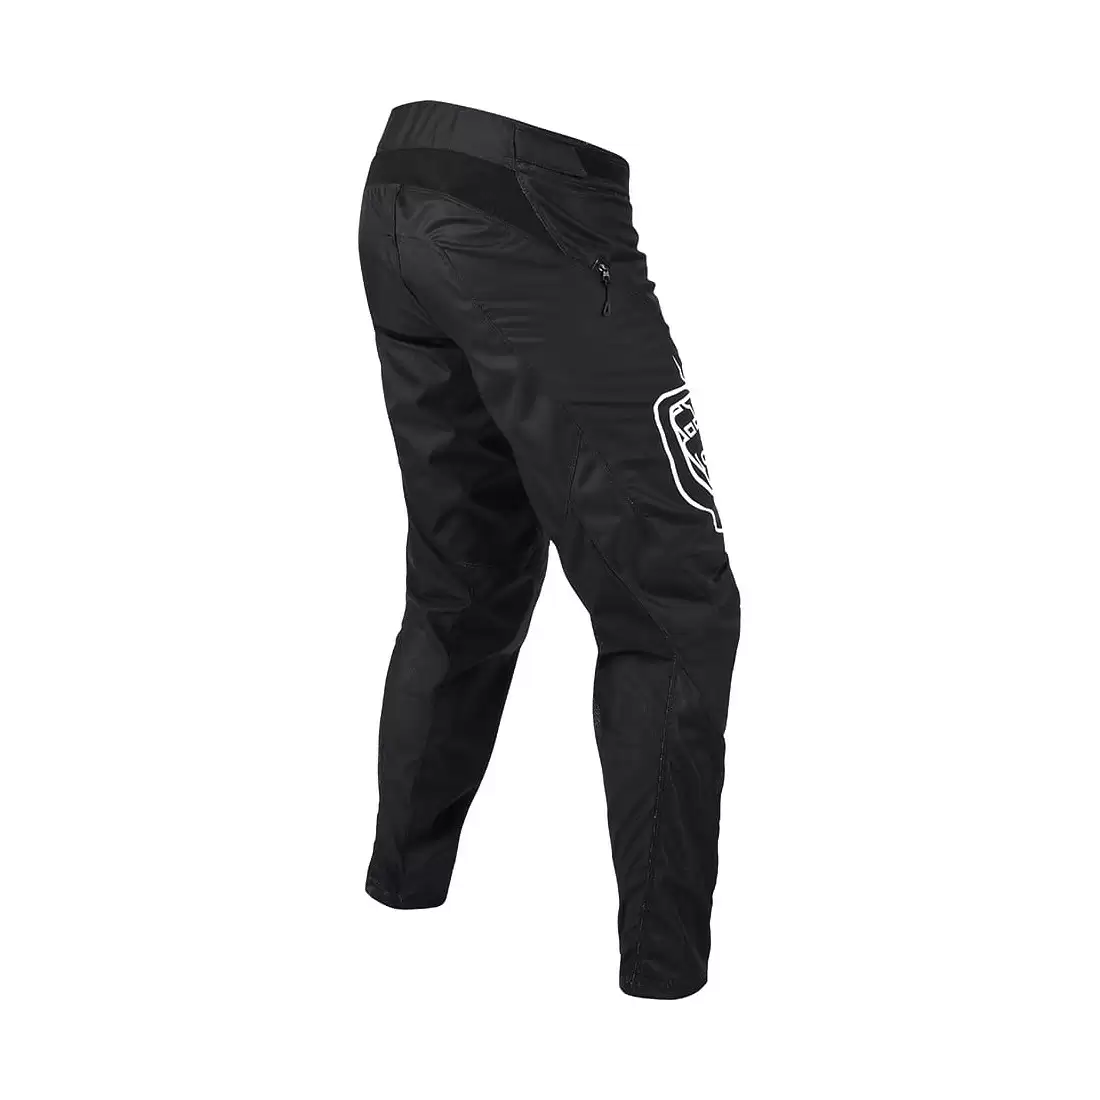 DH/Enduro Sprint MTB Long Pants Black Size XXXL #1